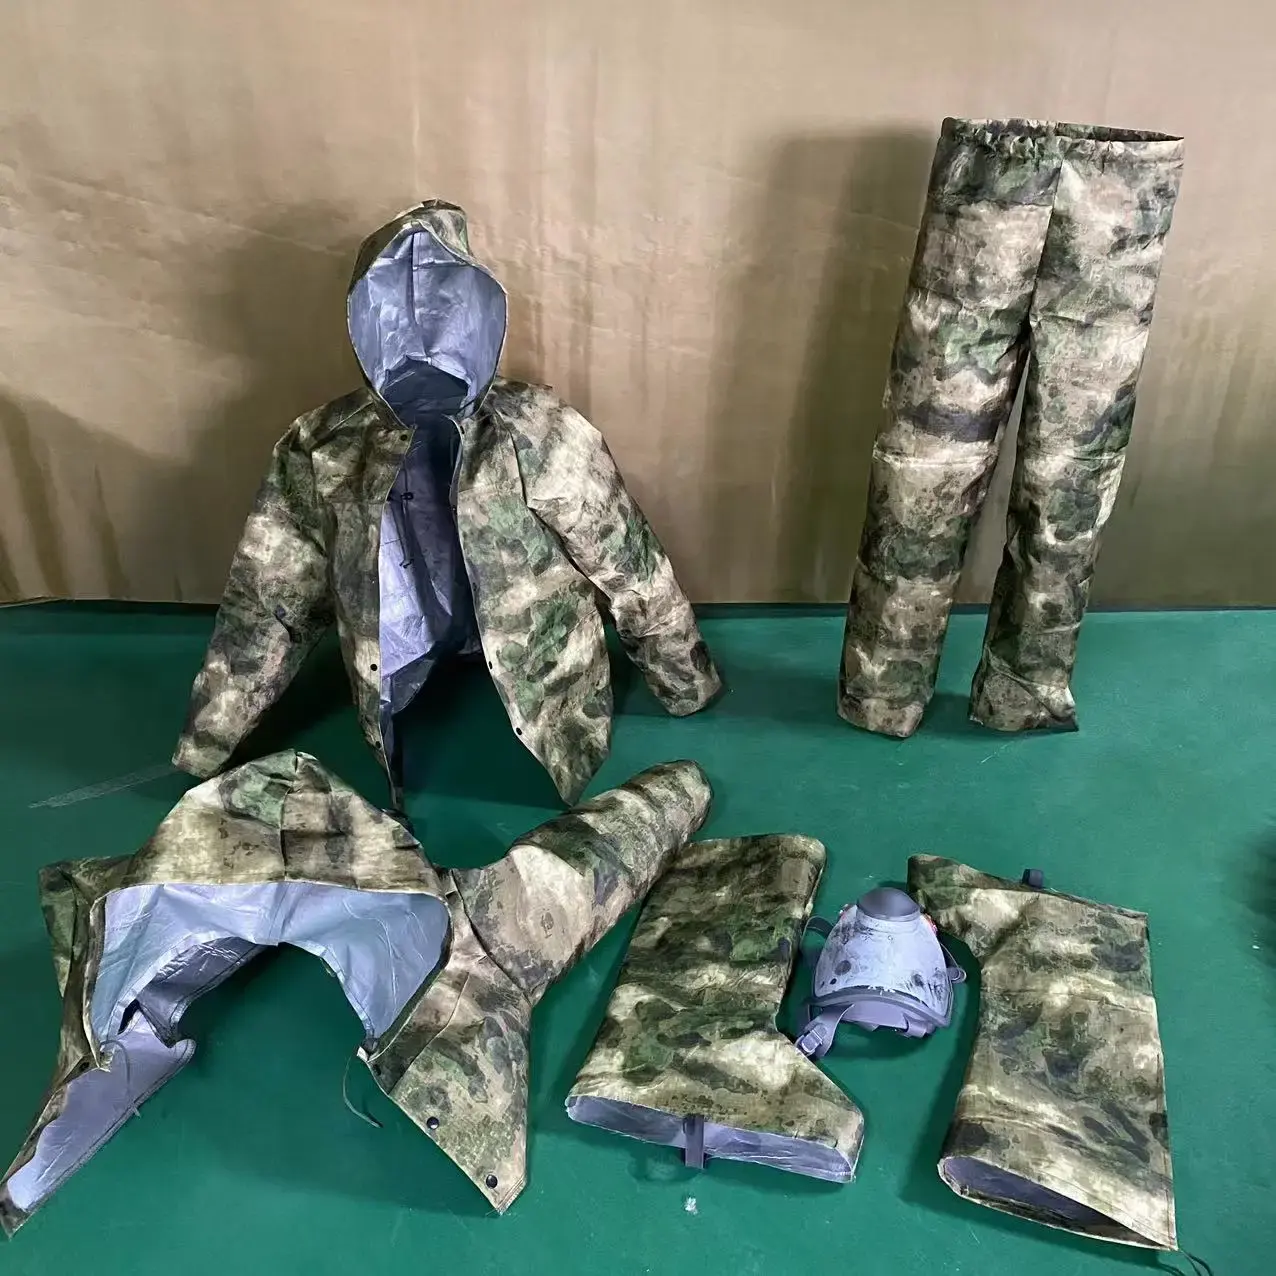 Weiteli Ruïneert Groen Camouflagepak Warmtebeeldvorming Anti-Infrarood Nir Camouflage Tactische Uitrusting